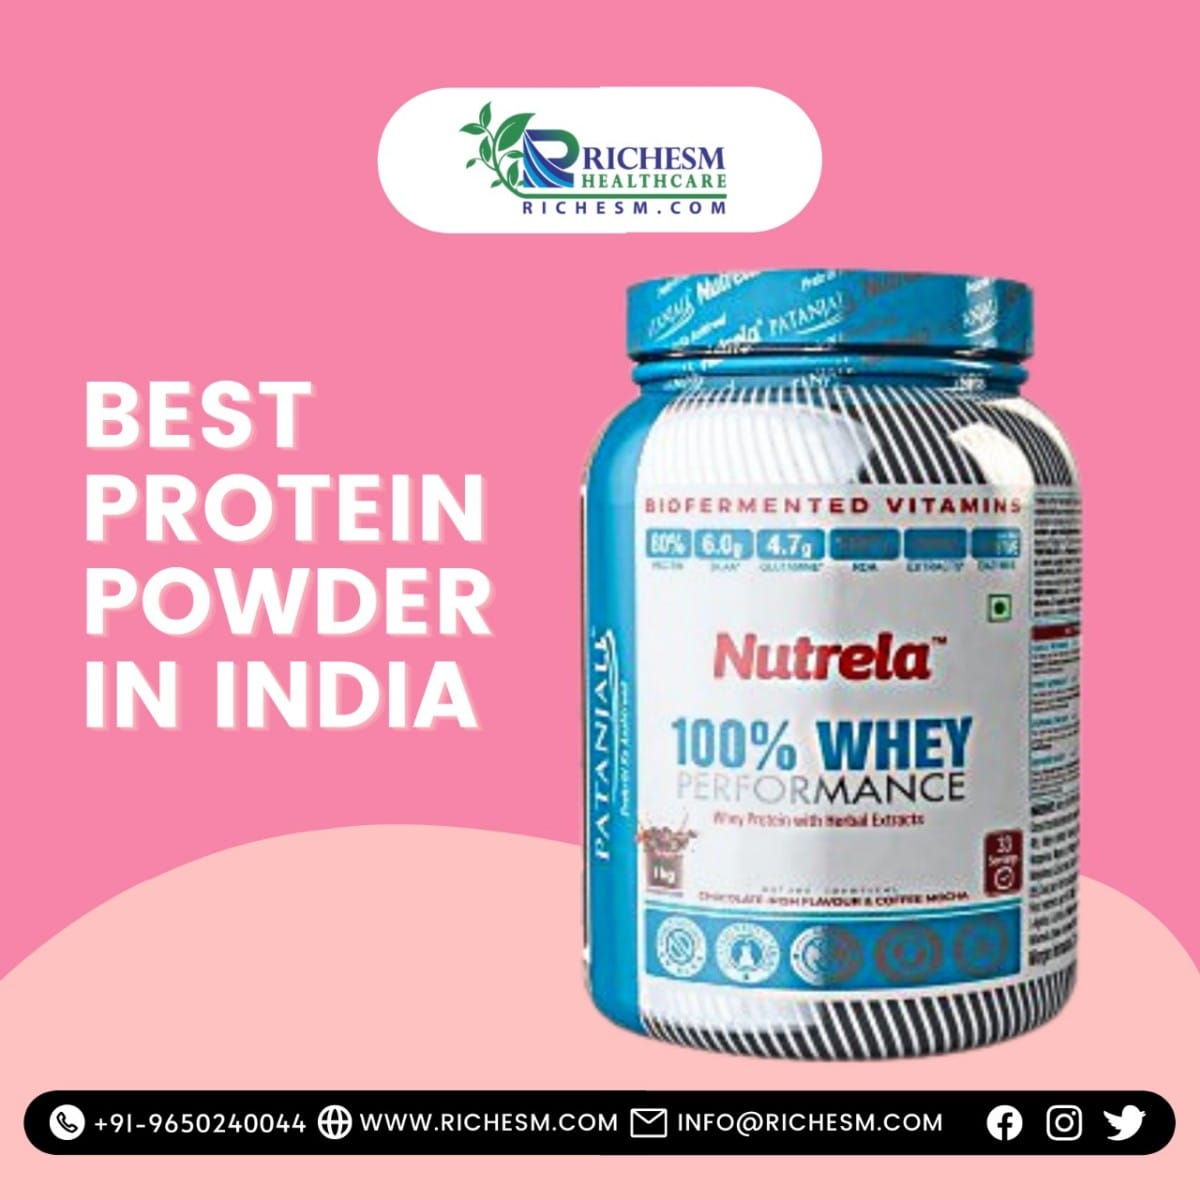 Best Protein Powder In India Health and Nutrition Best Protein Powder